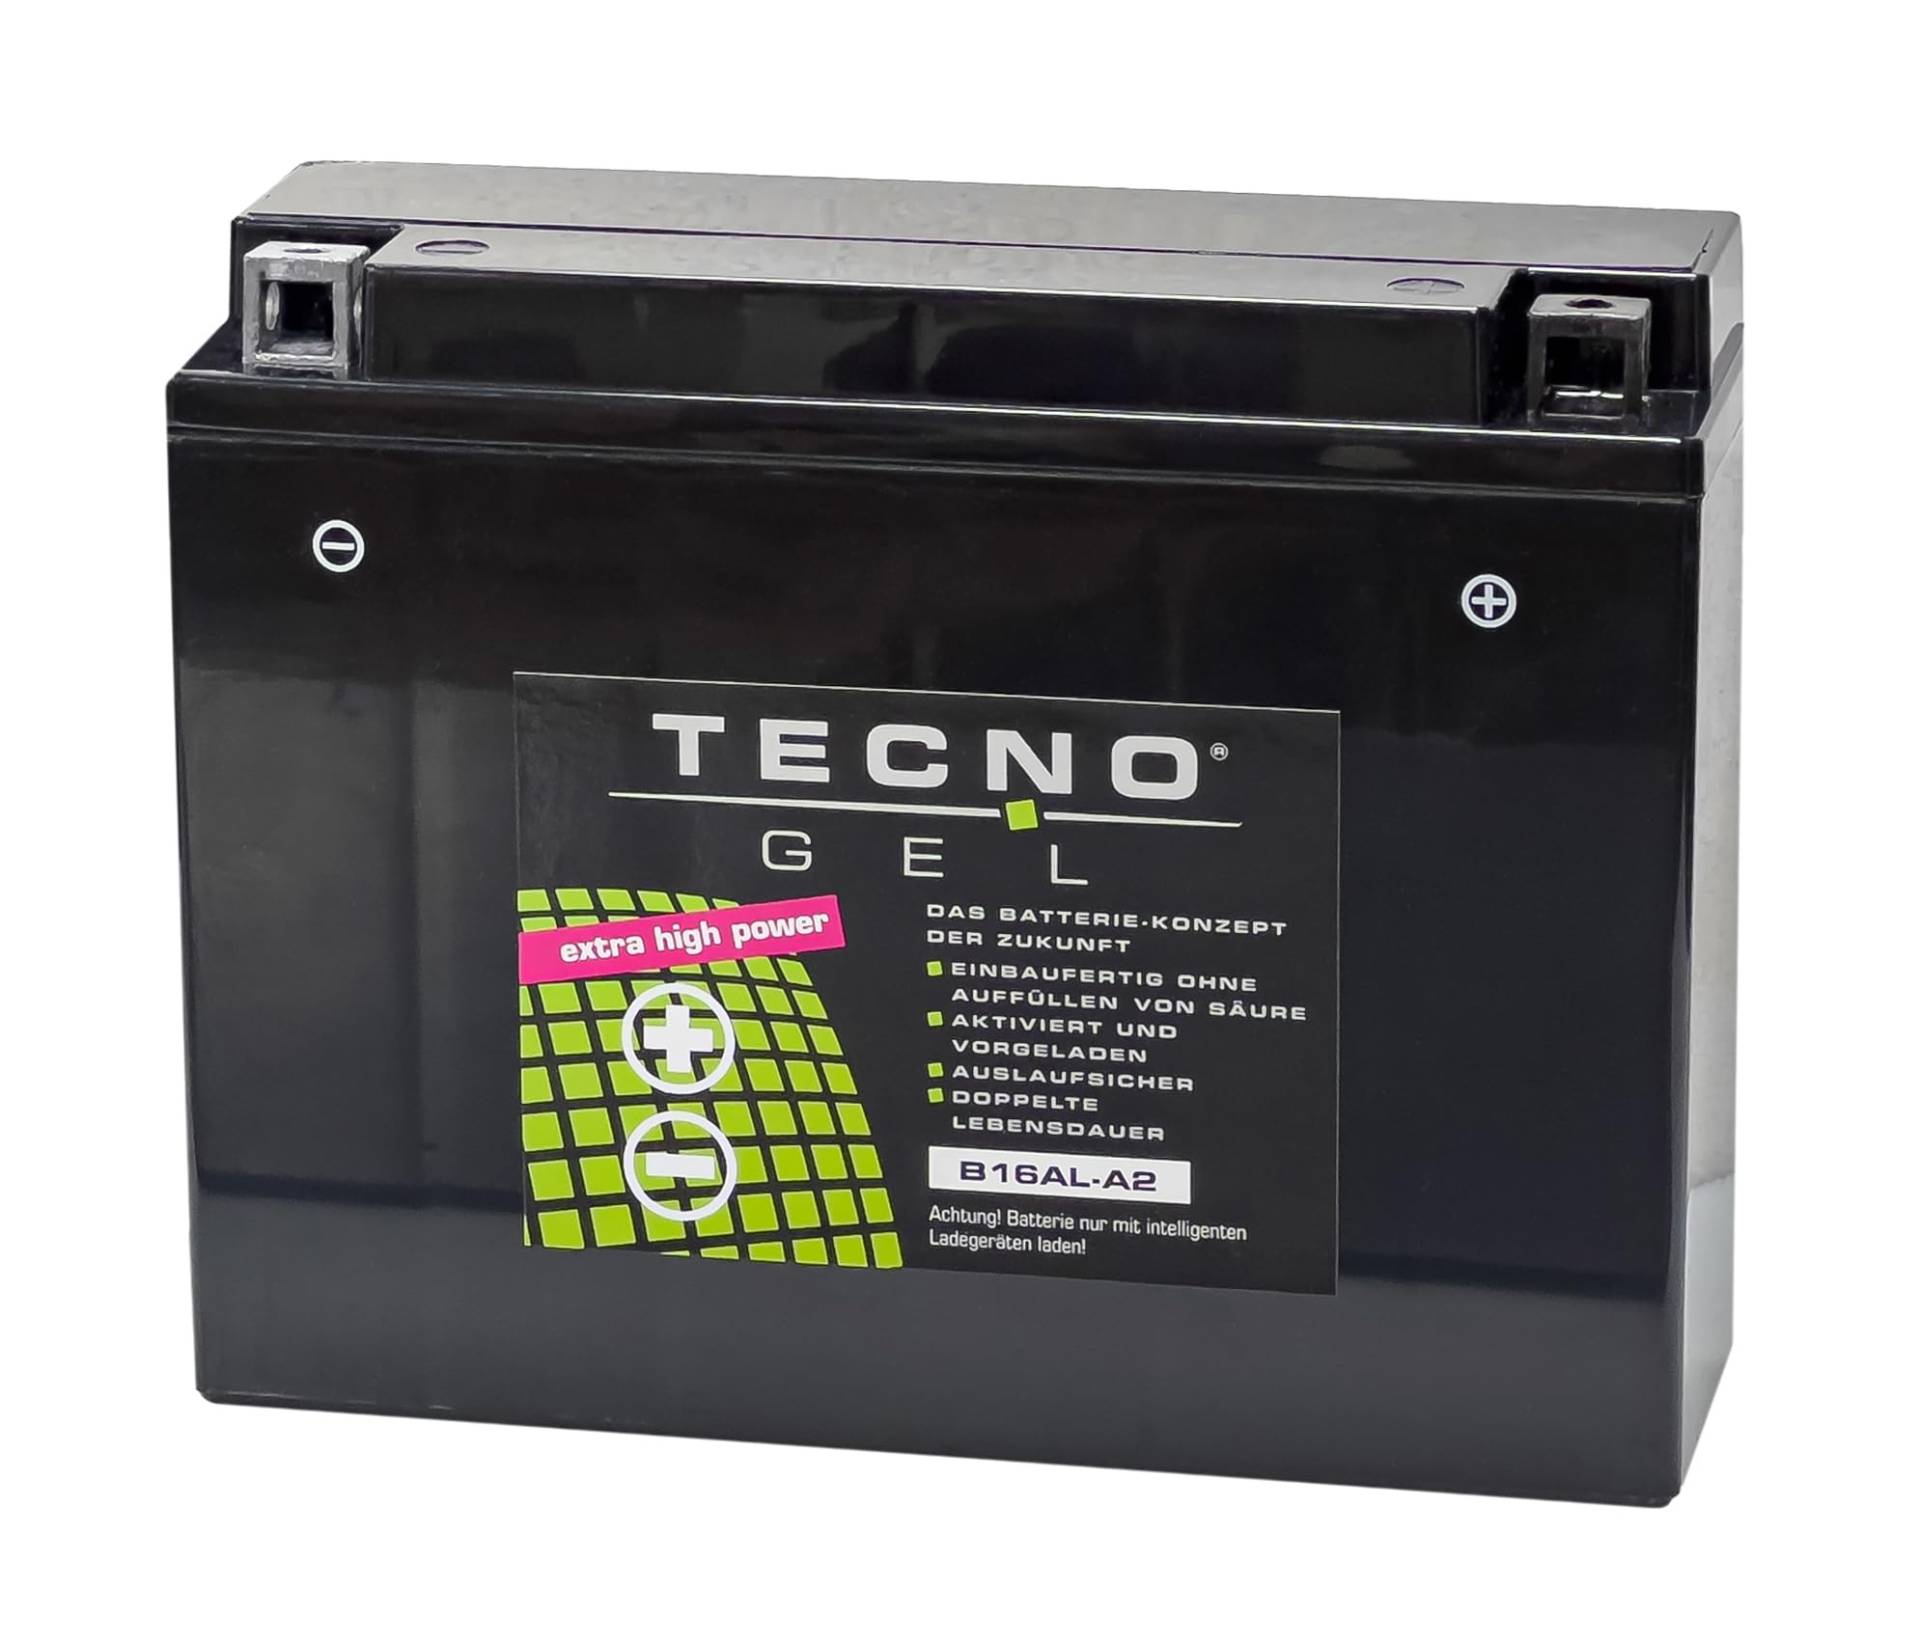 TECNO-GEL Motorrad-Batterie für YB16AL-A2, 12V Gel-Batterie 16Ah, 205x70x162 mm von Wirth-Federn